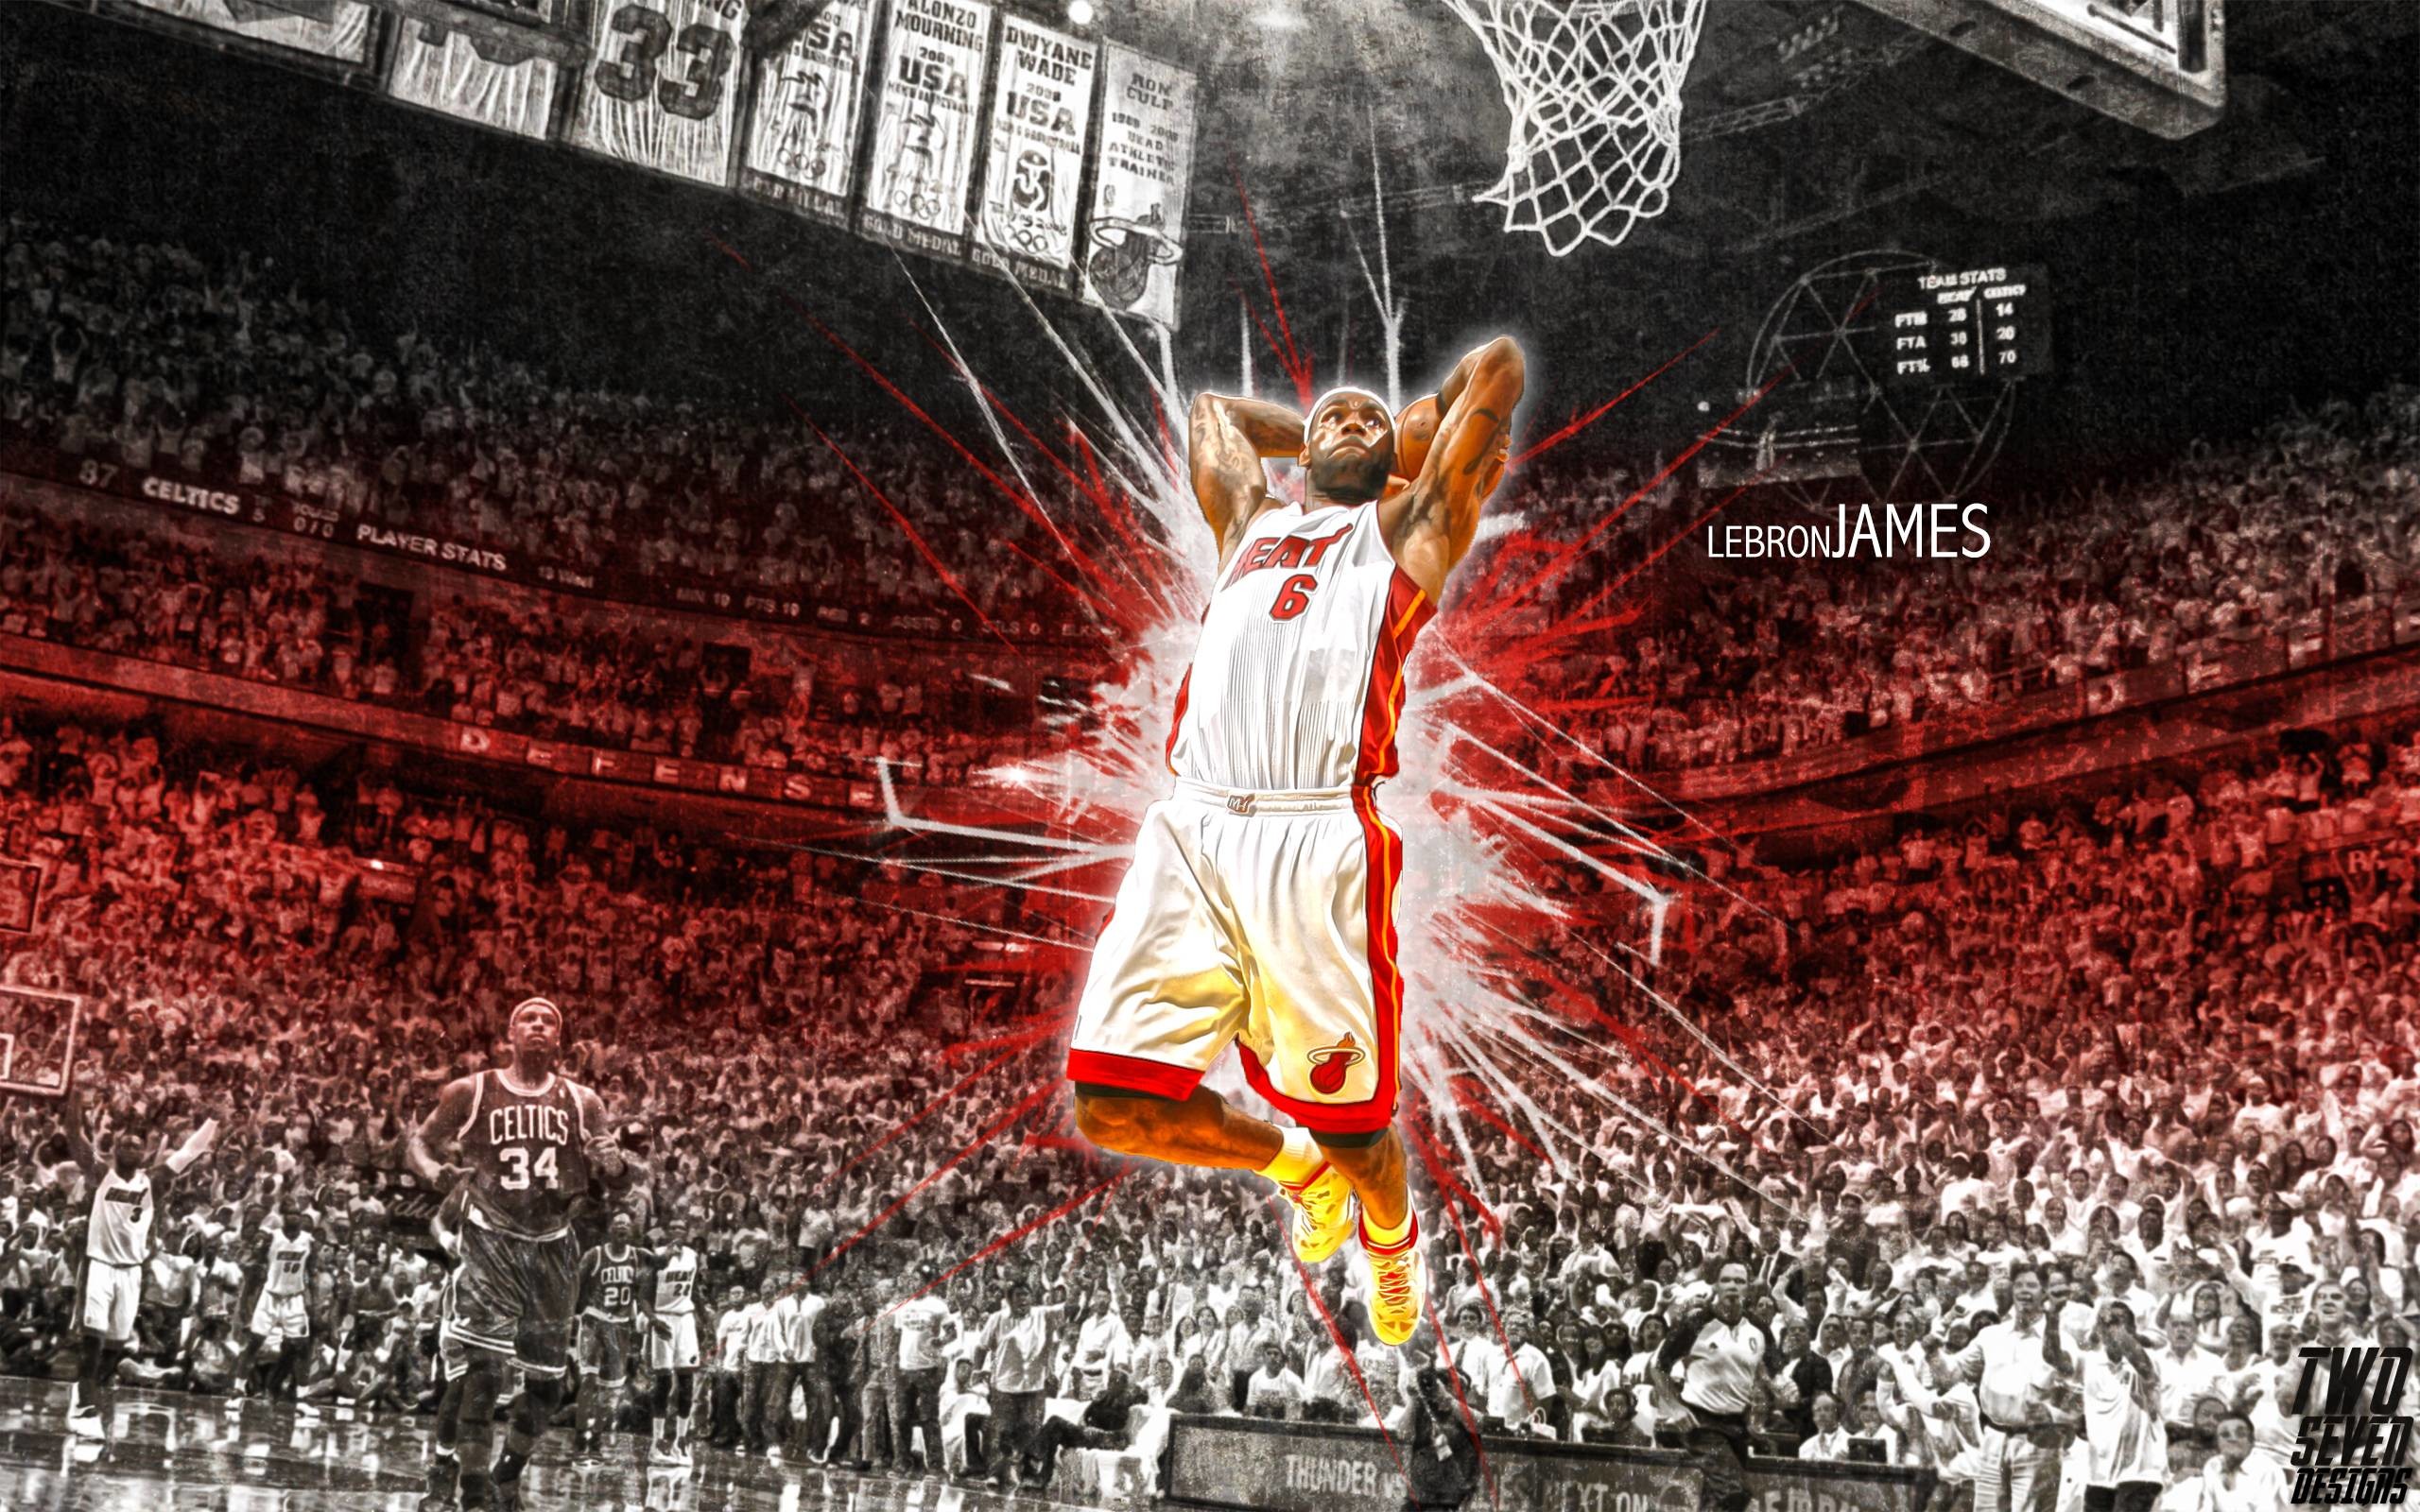 2560x1600 LeBron James dunking, Miami Heat, NBA 2K14 - 1920x1080 - Full HD .